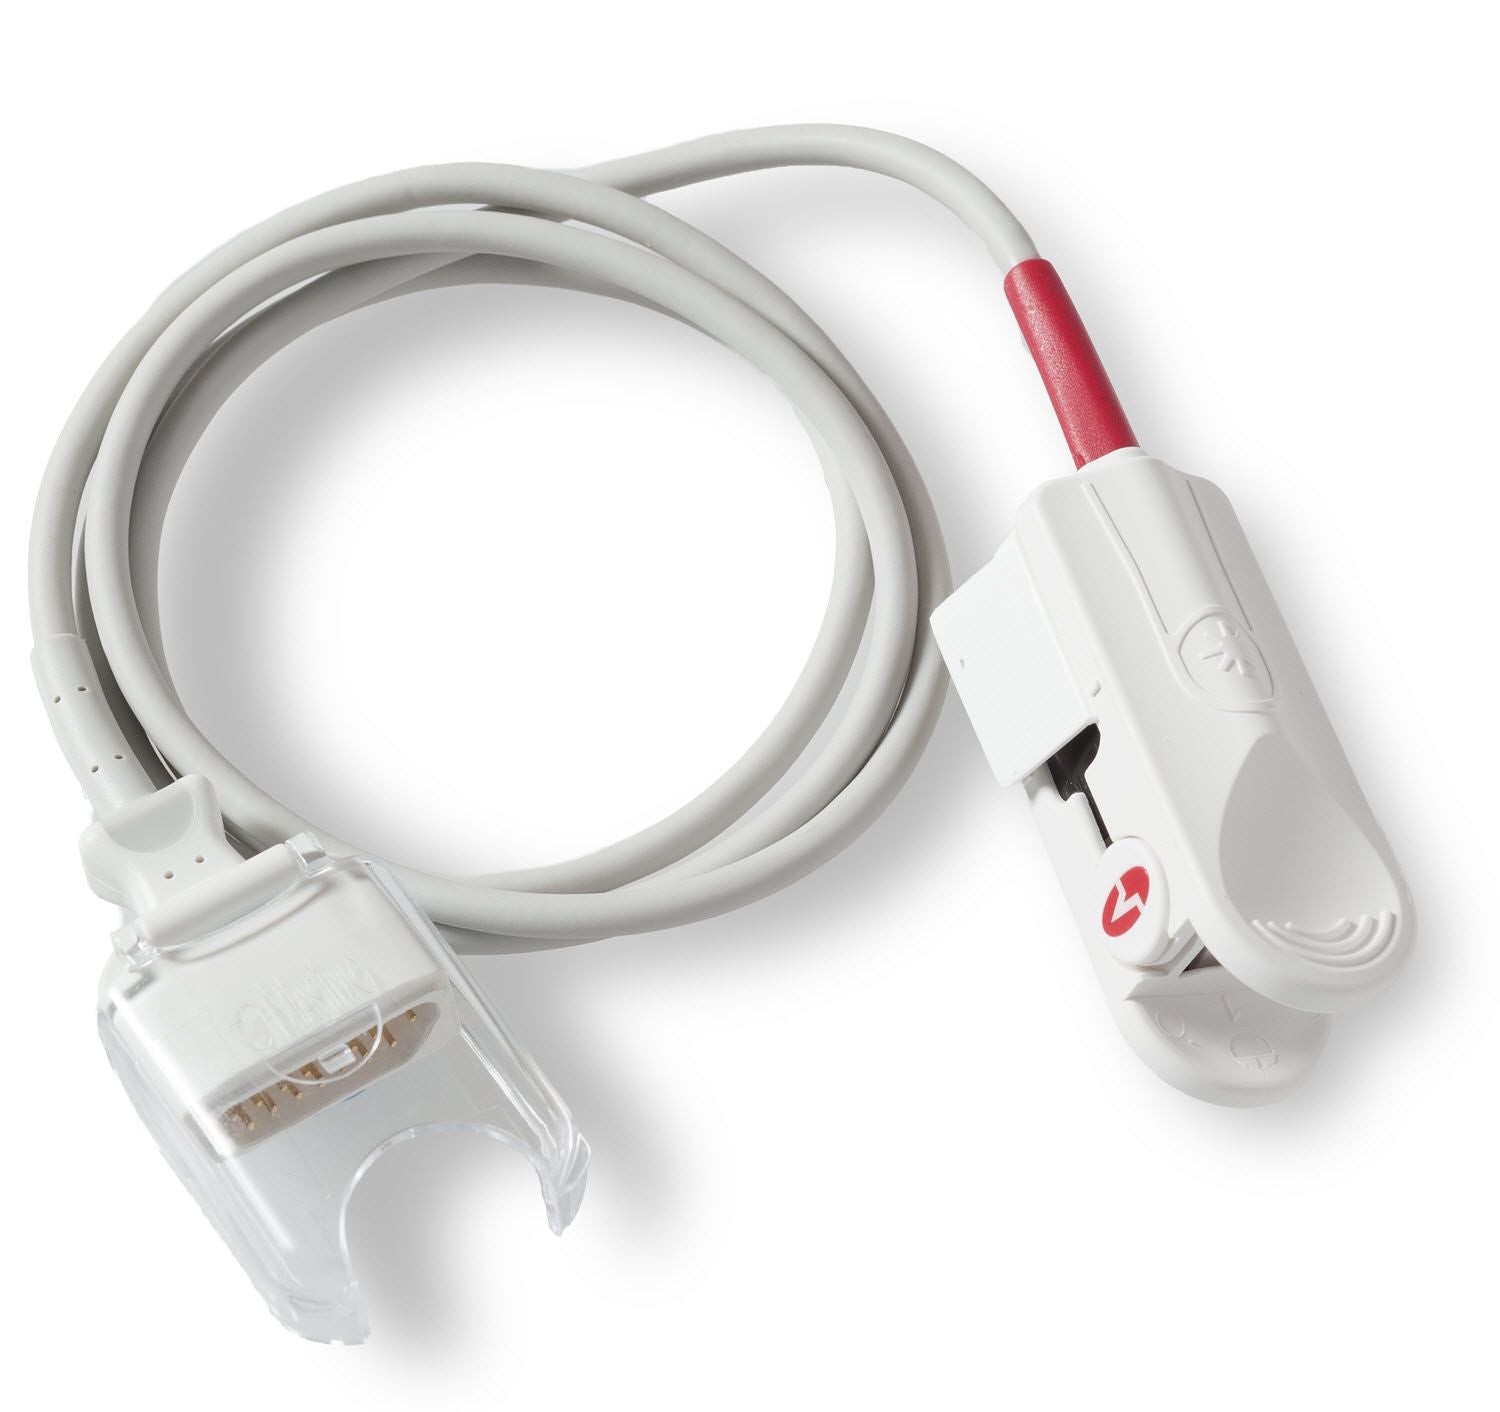 Zoll Rainbow DCIP Reusable SpO2/SpCO/SpMet Sensor for Adult Patients 8000-000371